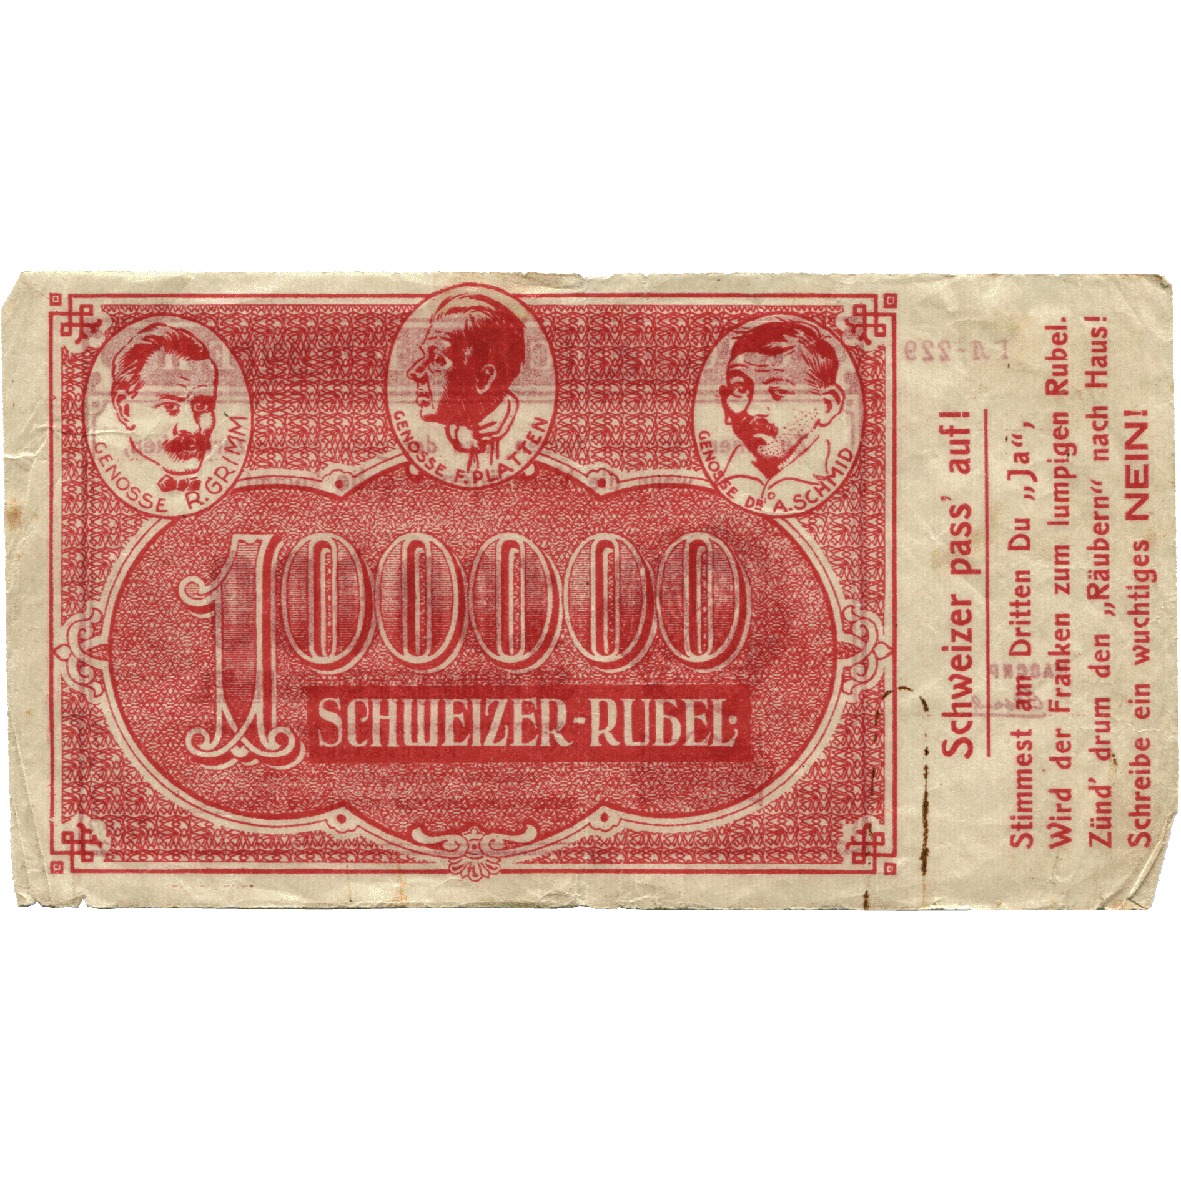 Schweizerische Eidgenossenschaft, Bündnis bürgerlicher Parteien, Propagandaschein 100'000 «Schweizer Rubel» 1922 (obverse)